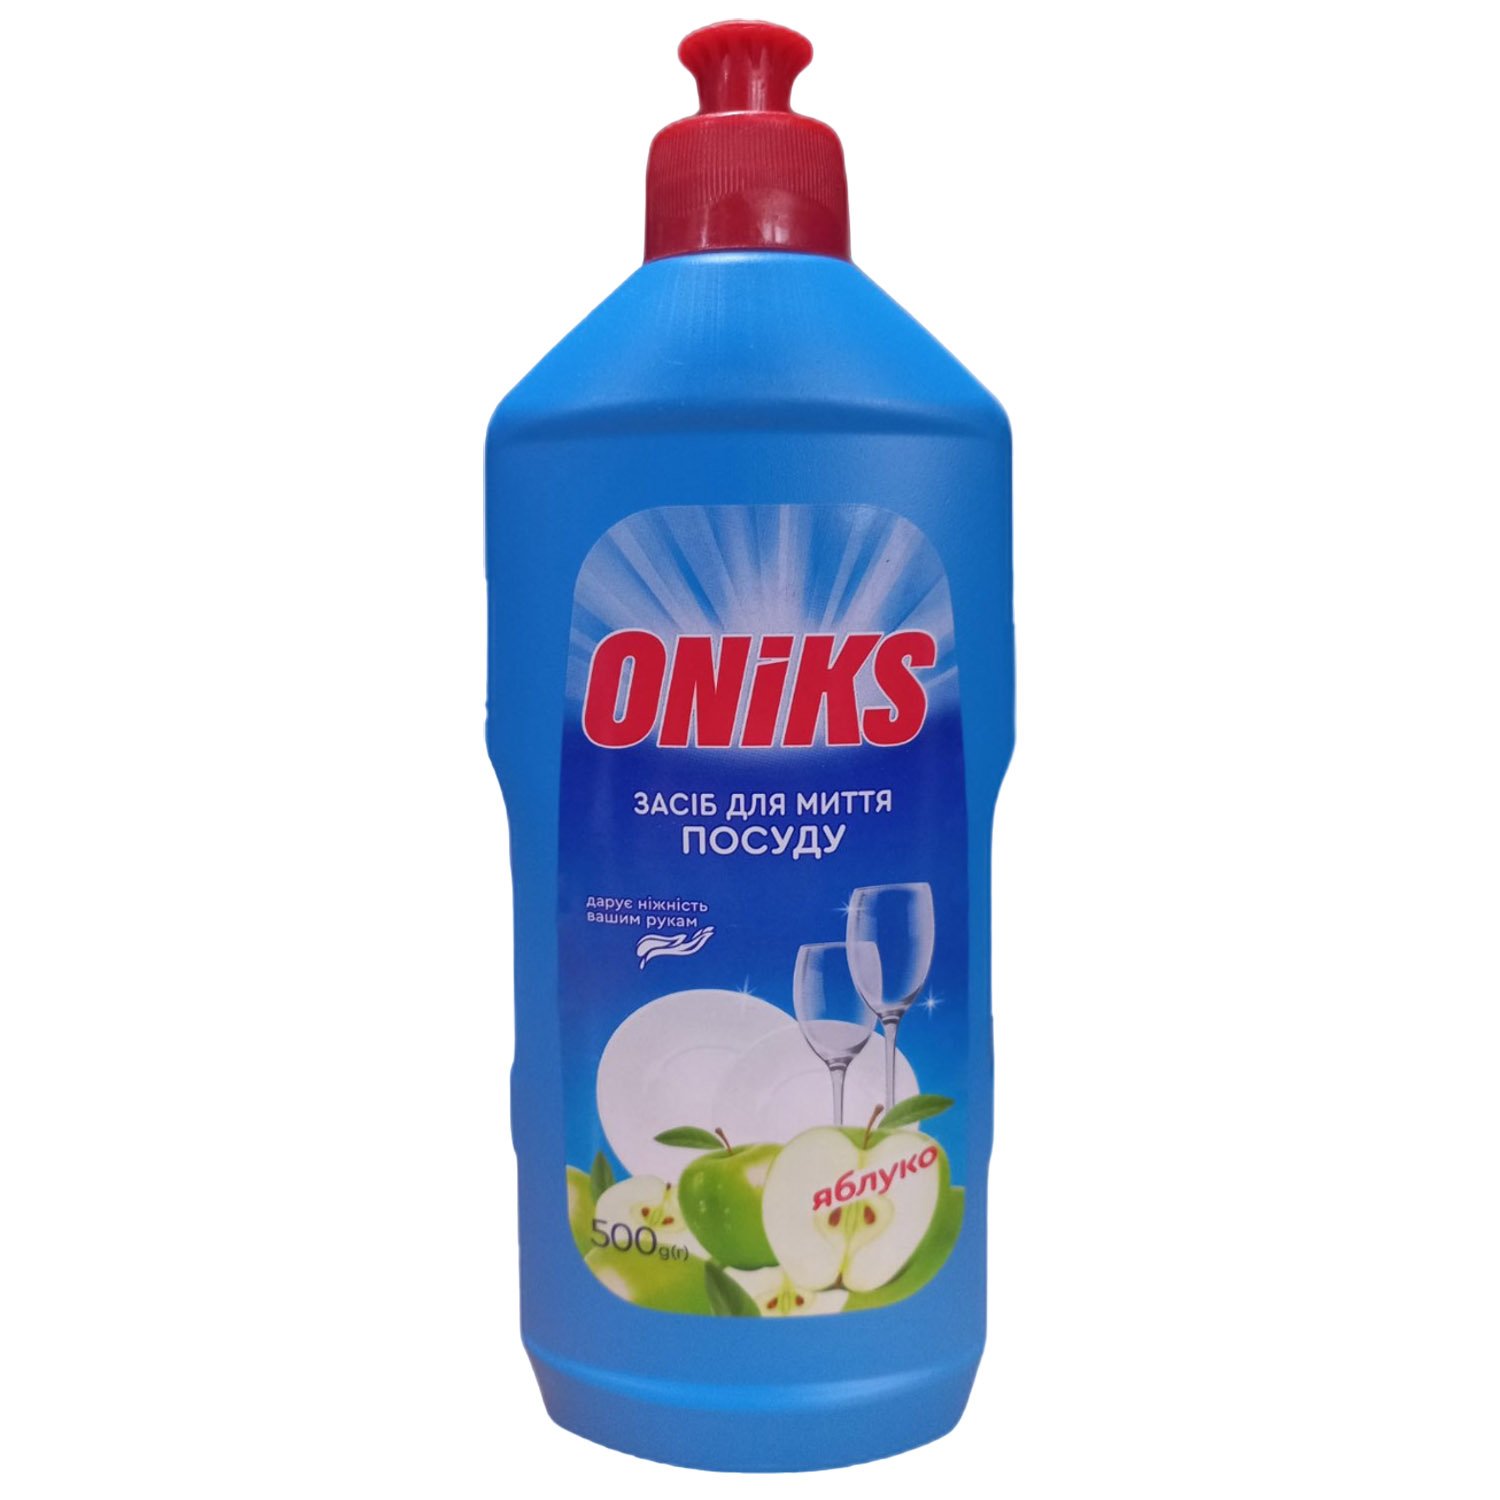 Средство для мытья посуды Oniks Яблоко 500 мл - фото 1